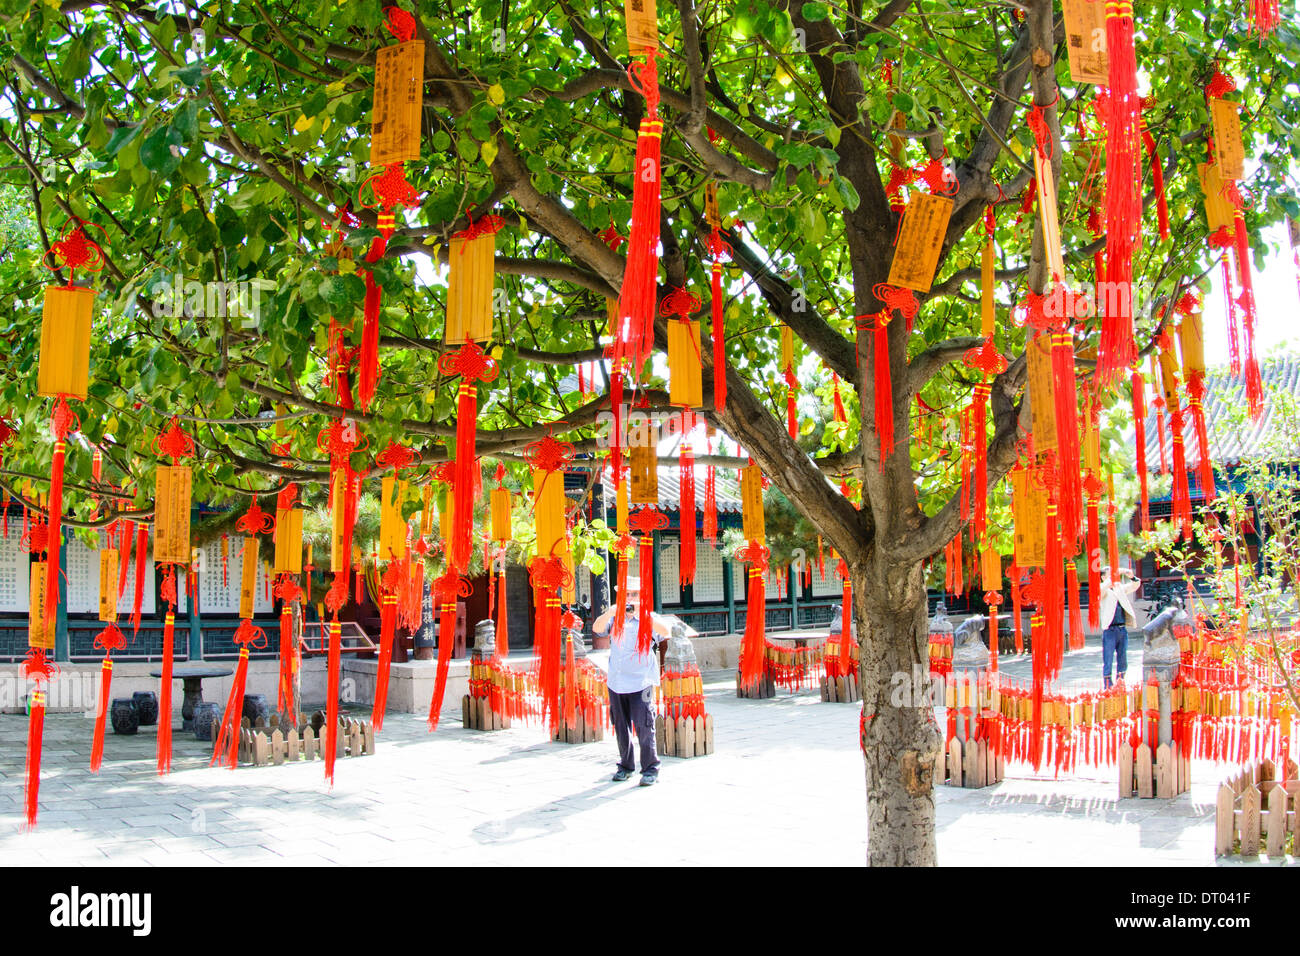 La Chine, Beijing, Yonghegong Lama Temple bonne chance charms Banque D'Images